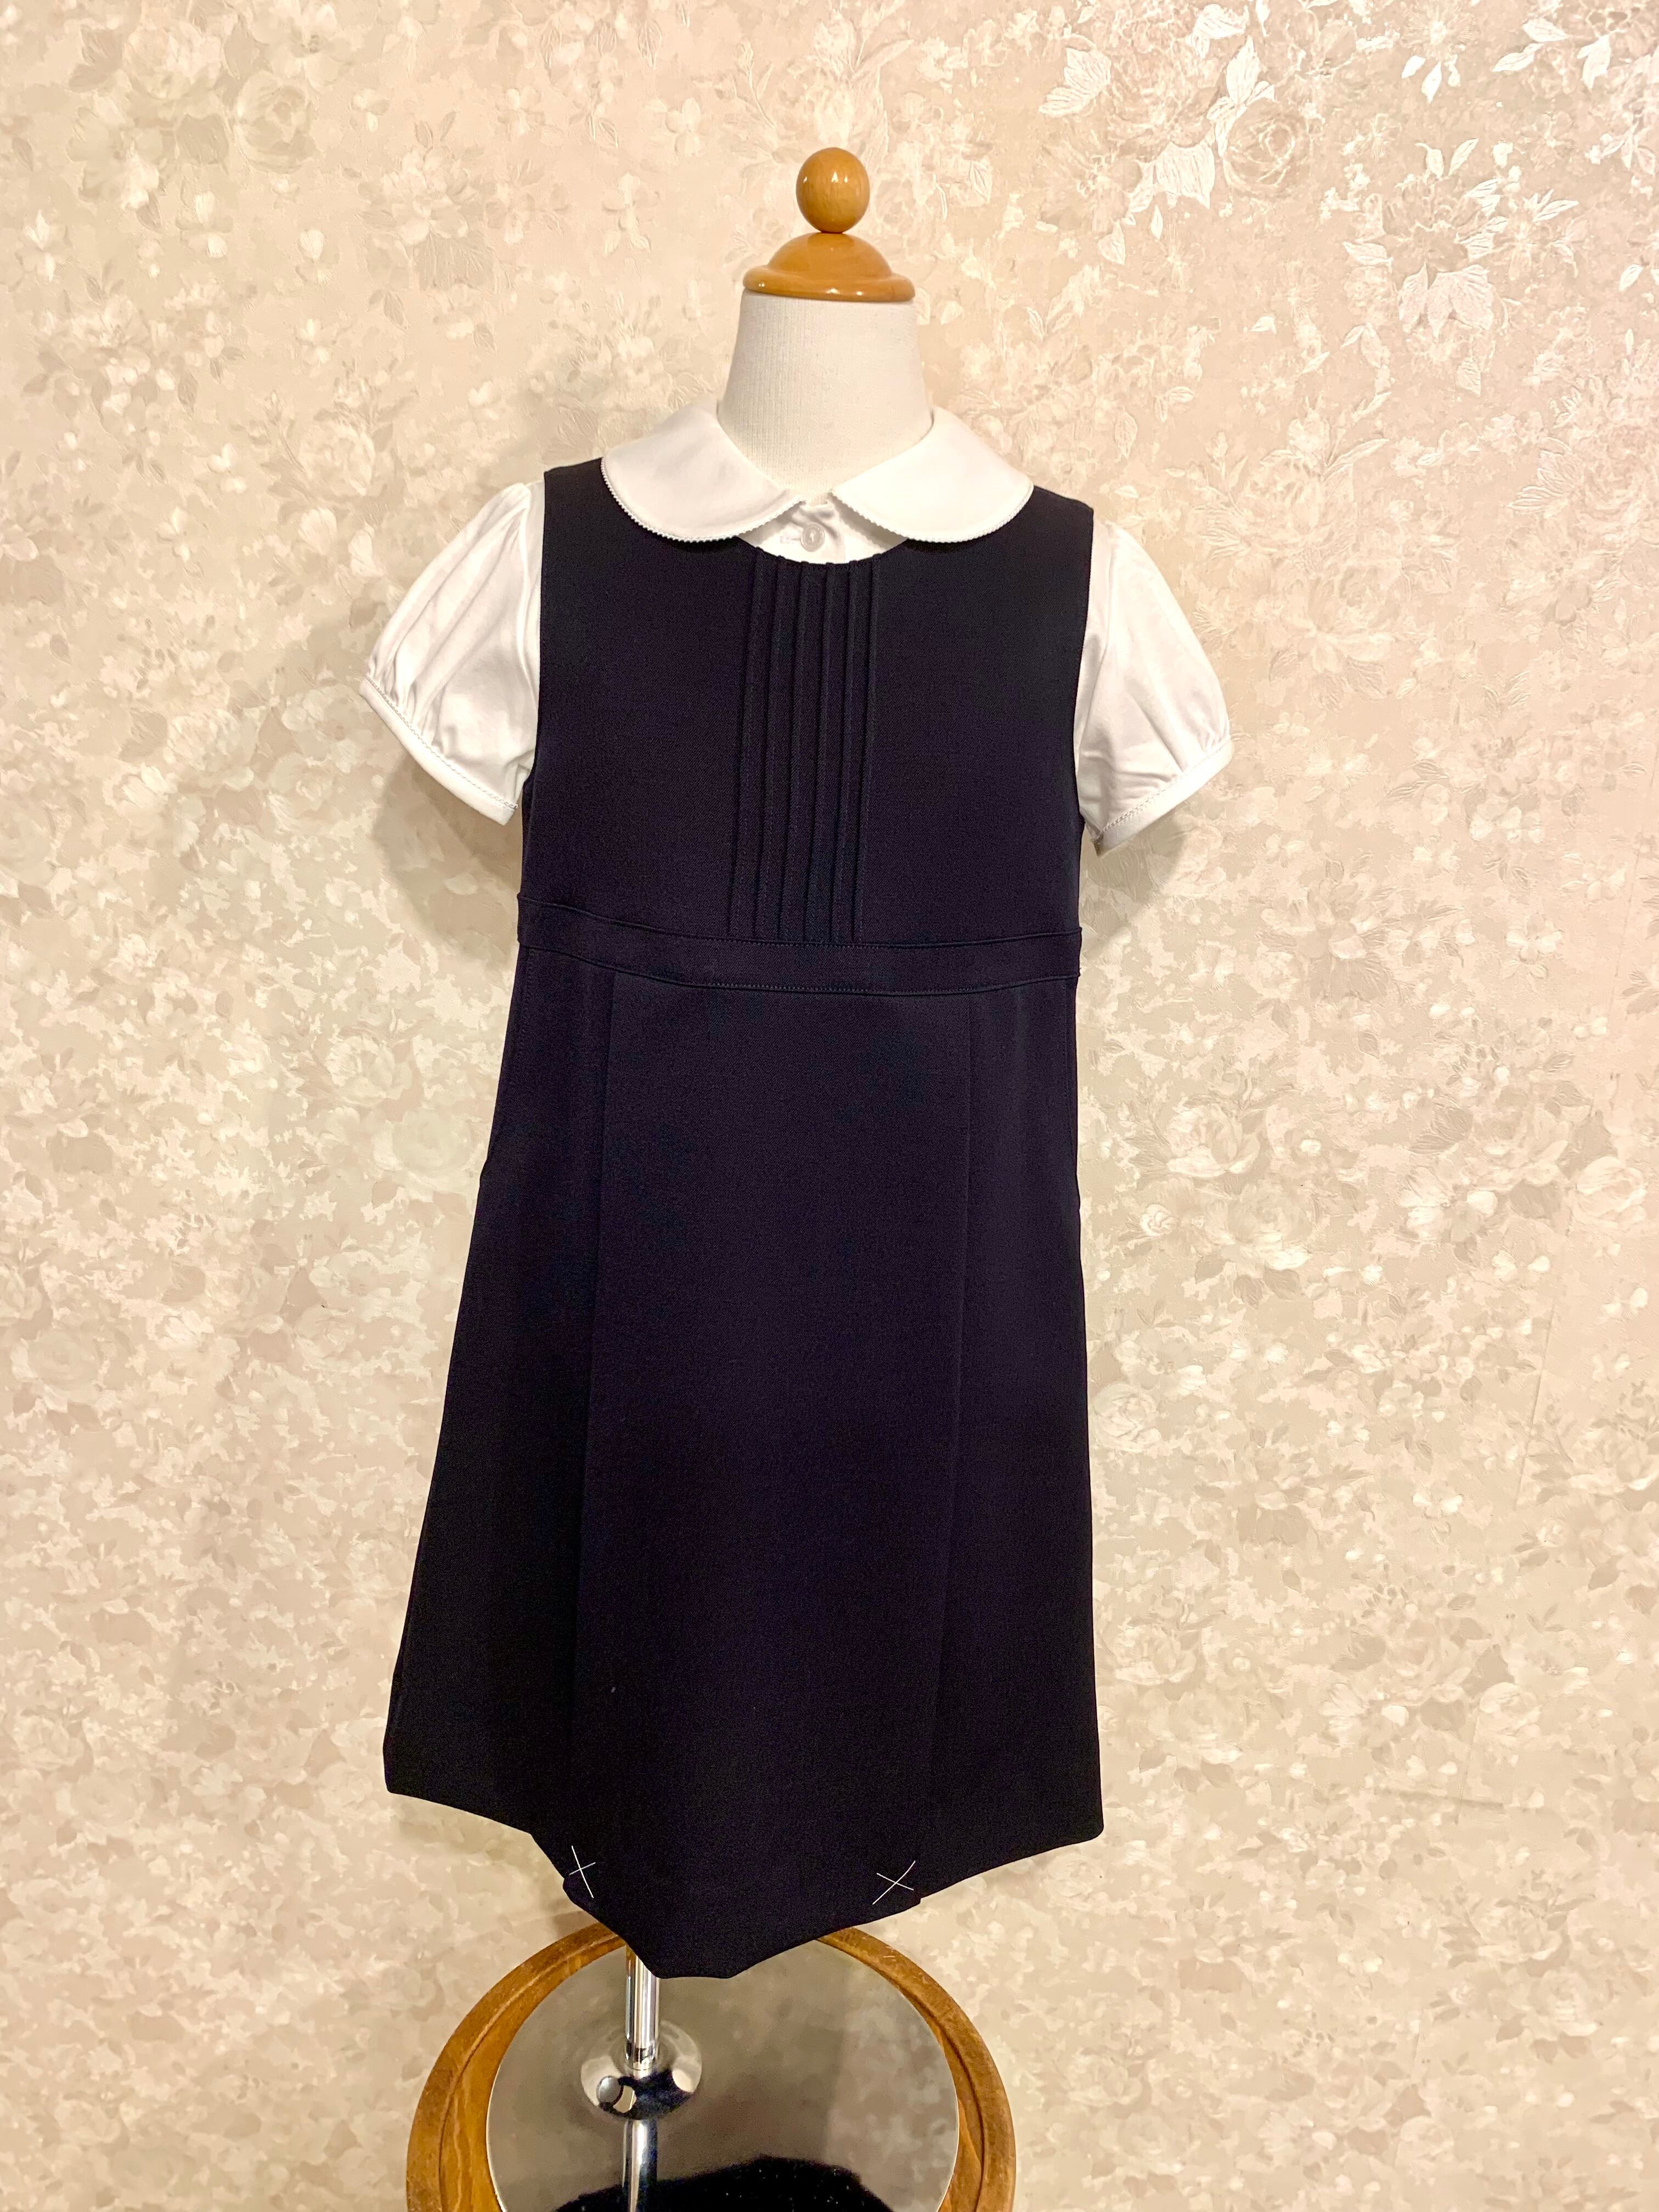 パールボンキッズ ピンタックジャンパースカート - フォーマル/ドレス